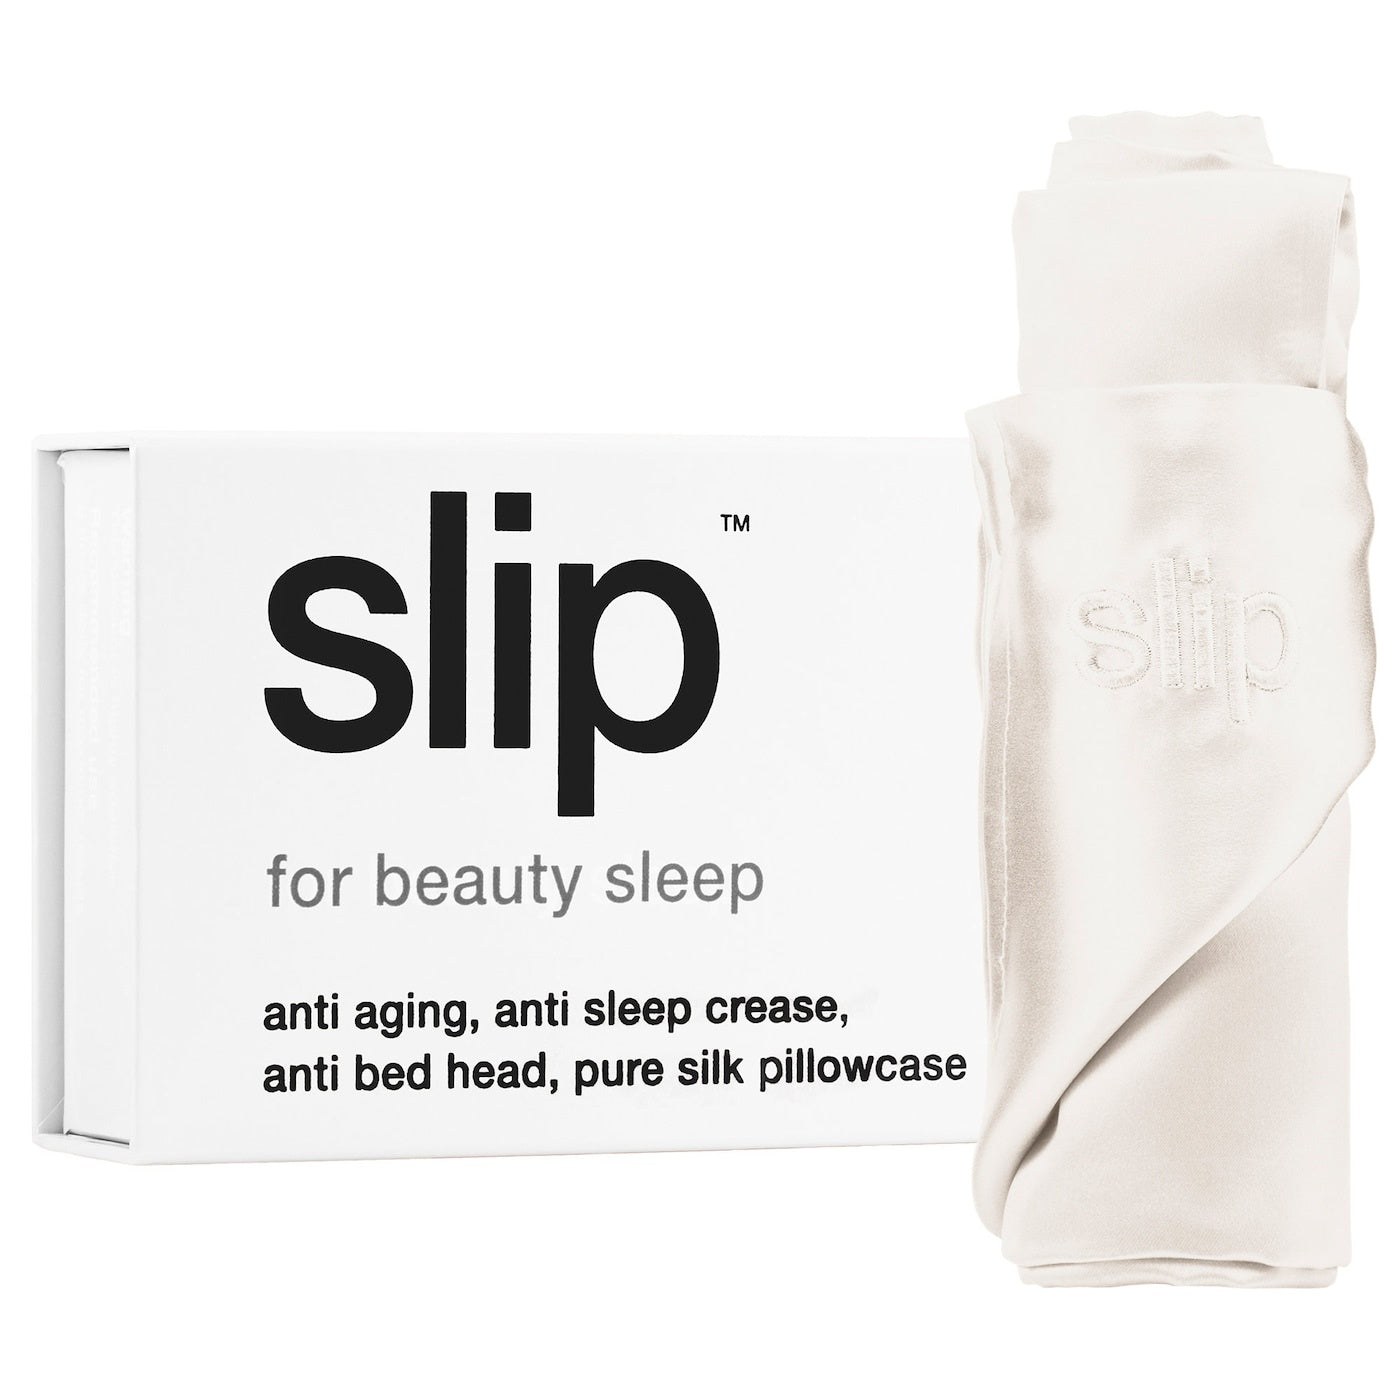 Slip Pure silk pillowcase - white, two sizes